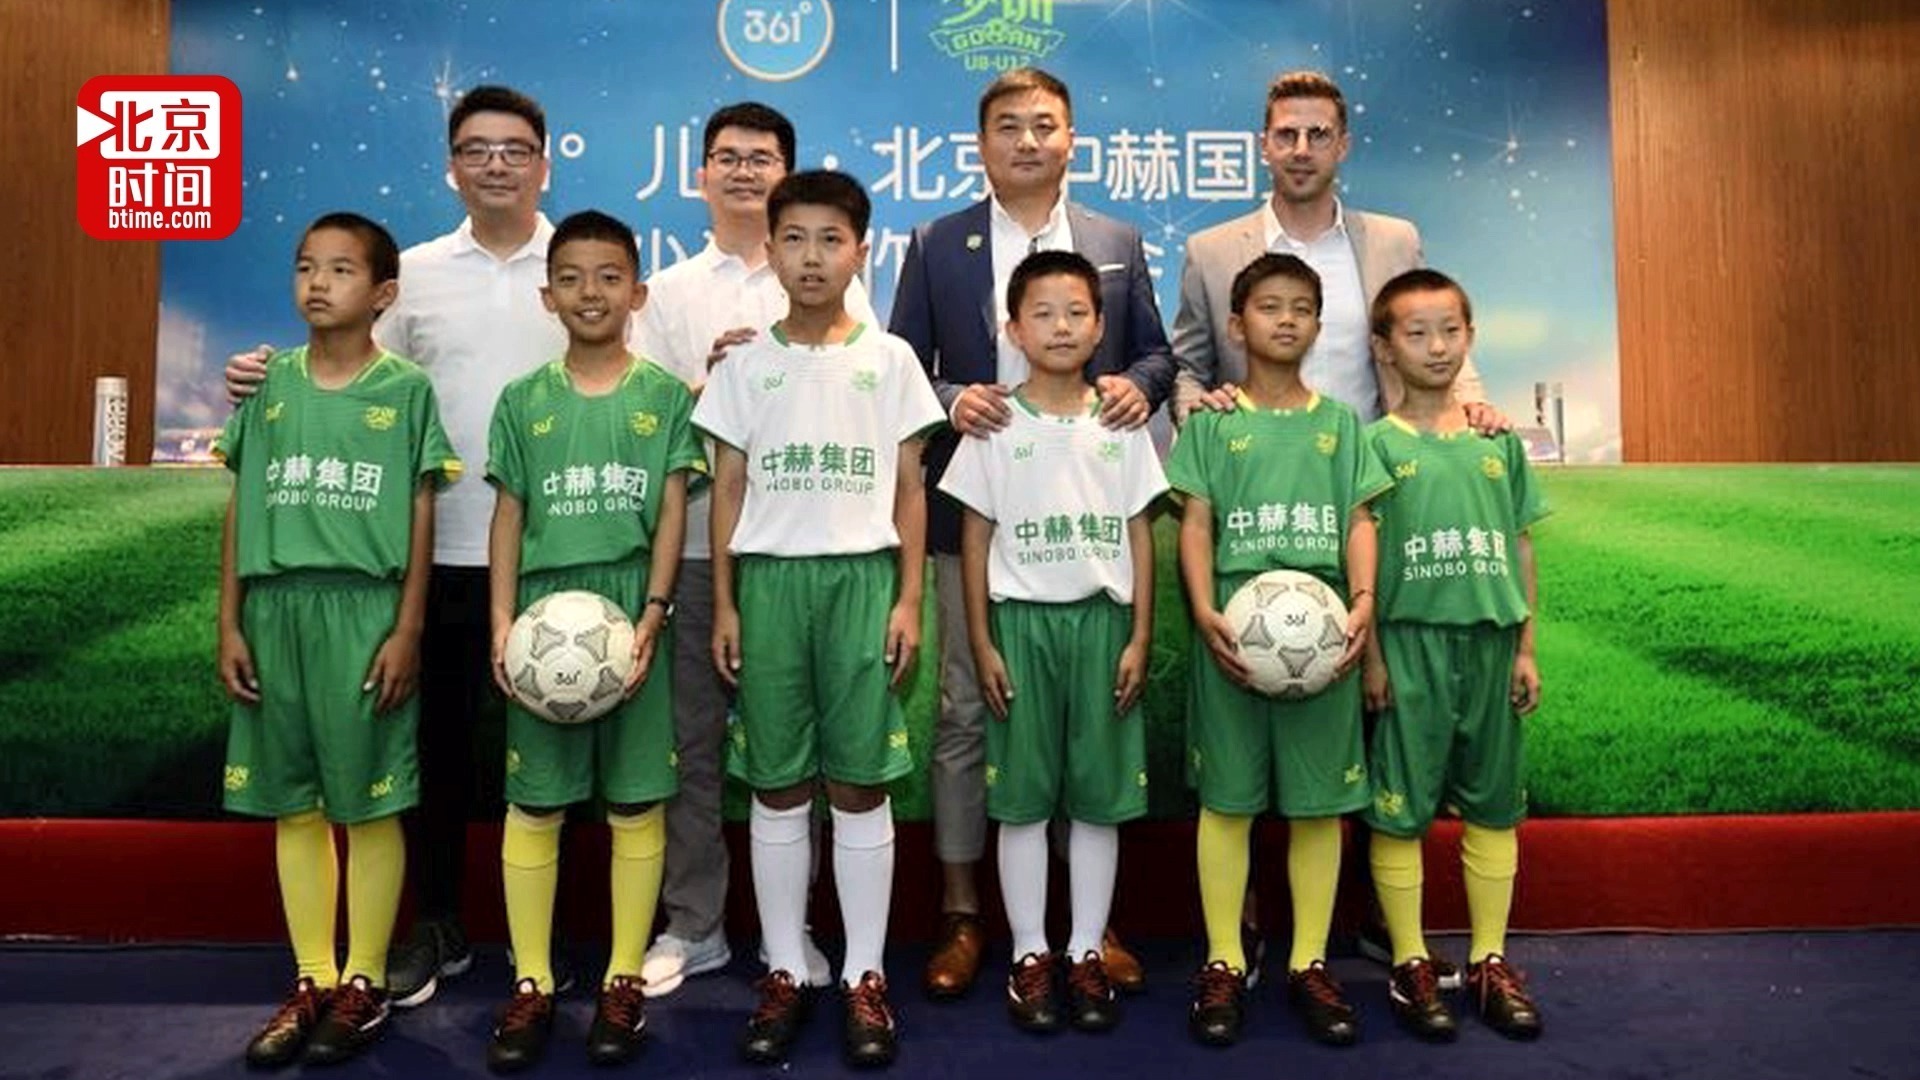 北京中赫国安少训迎来新伙伴 小球员穿上专业足球装备